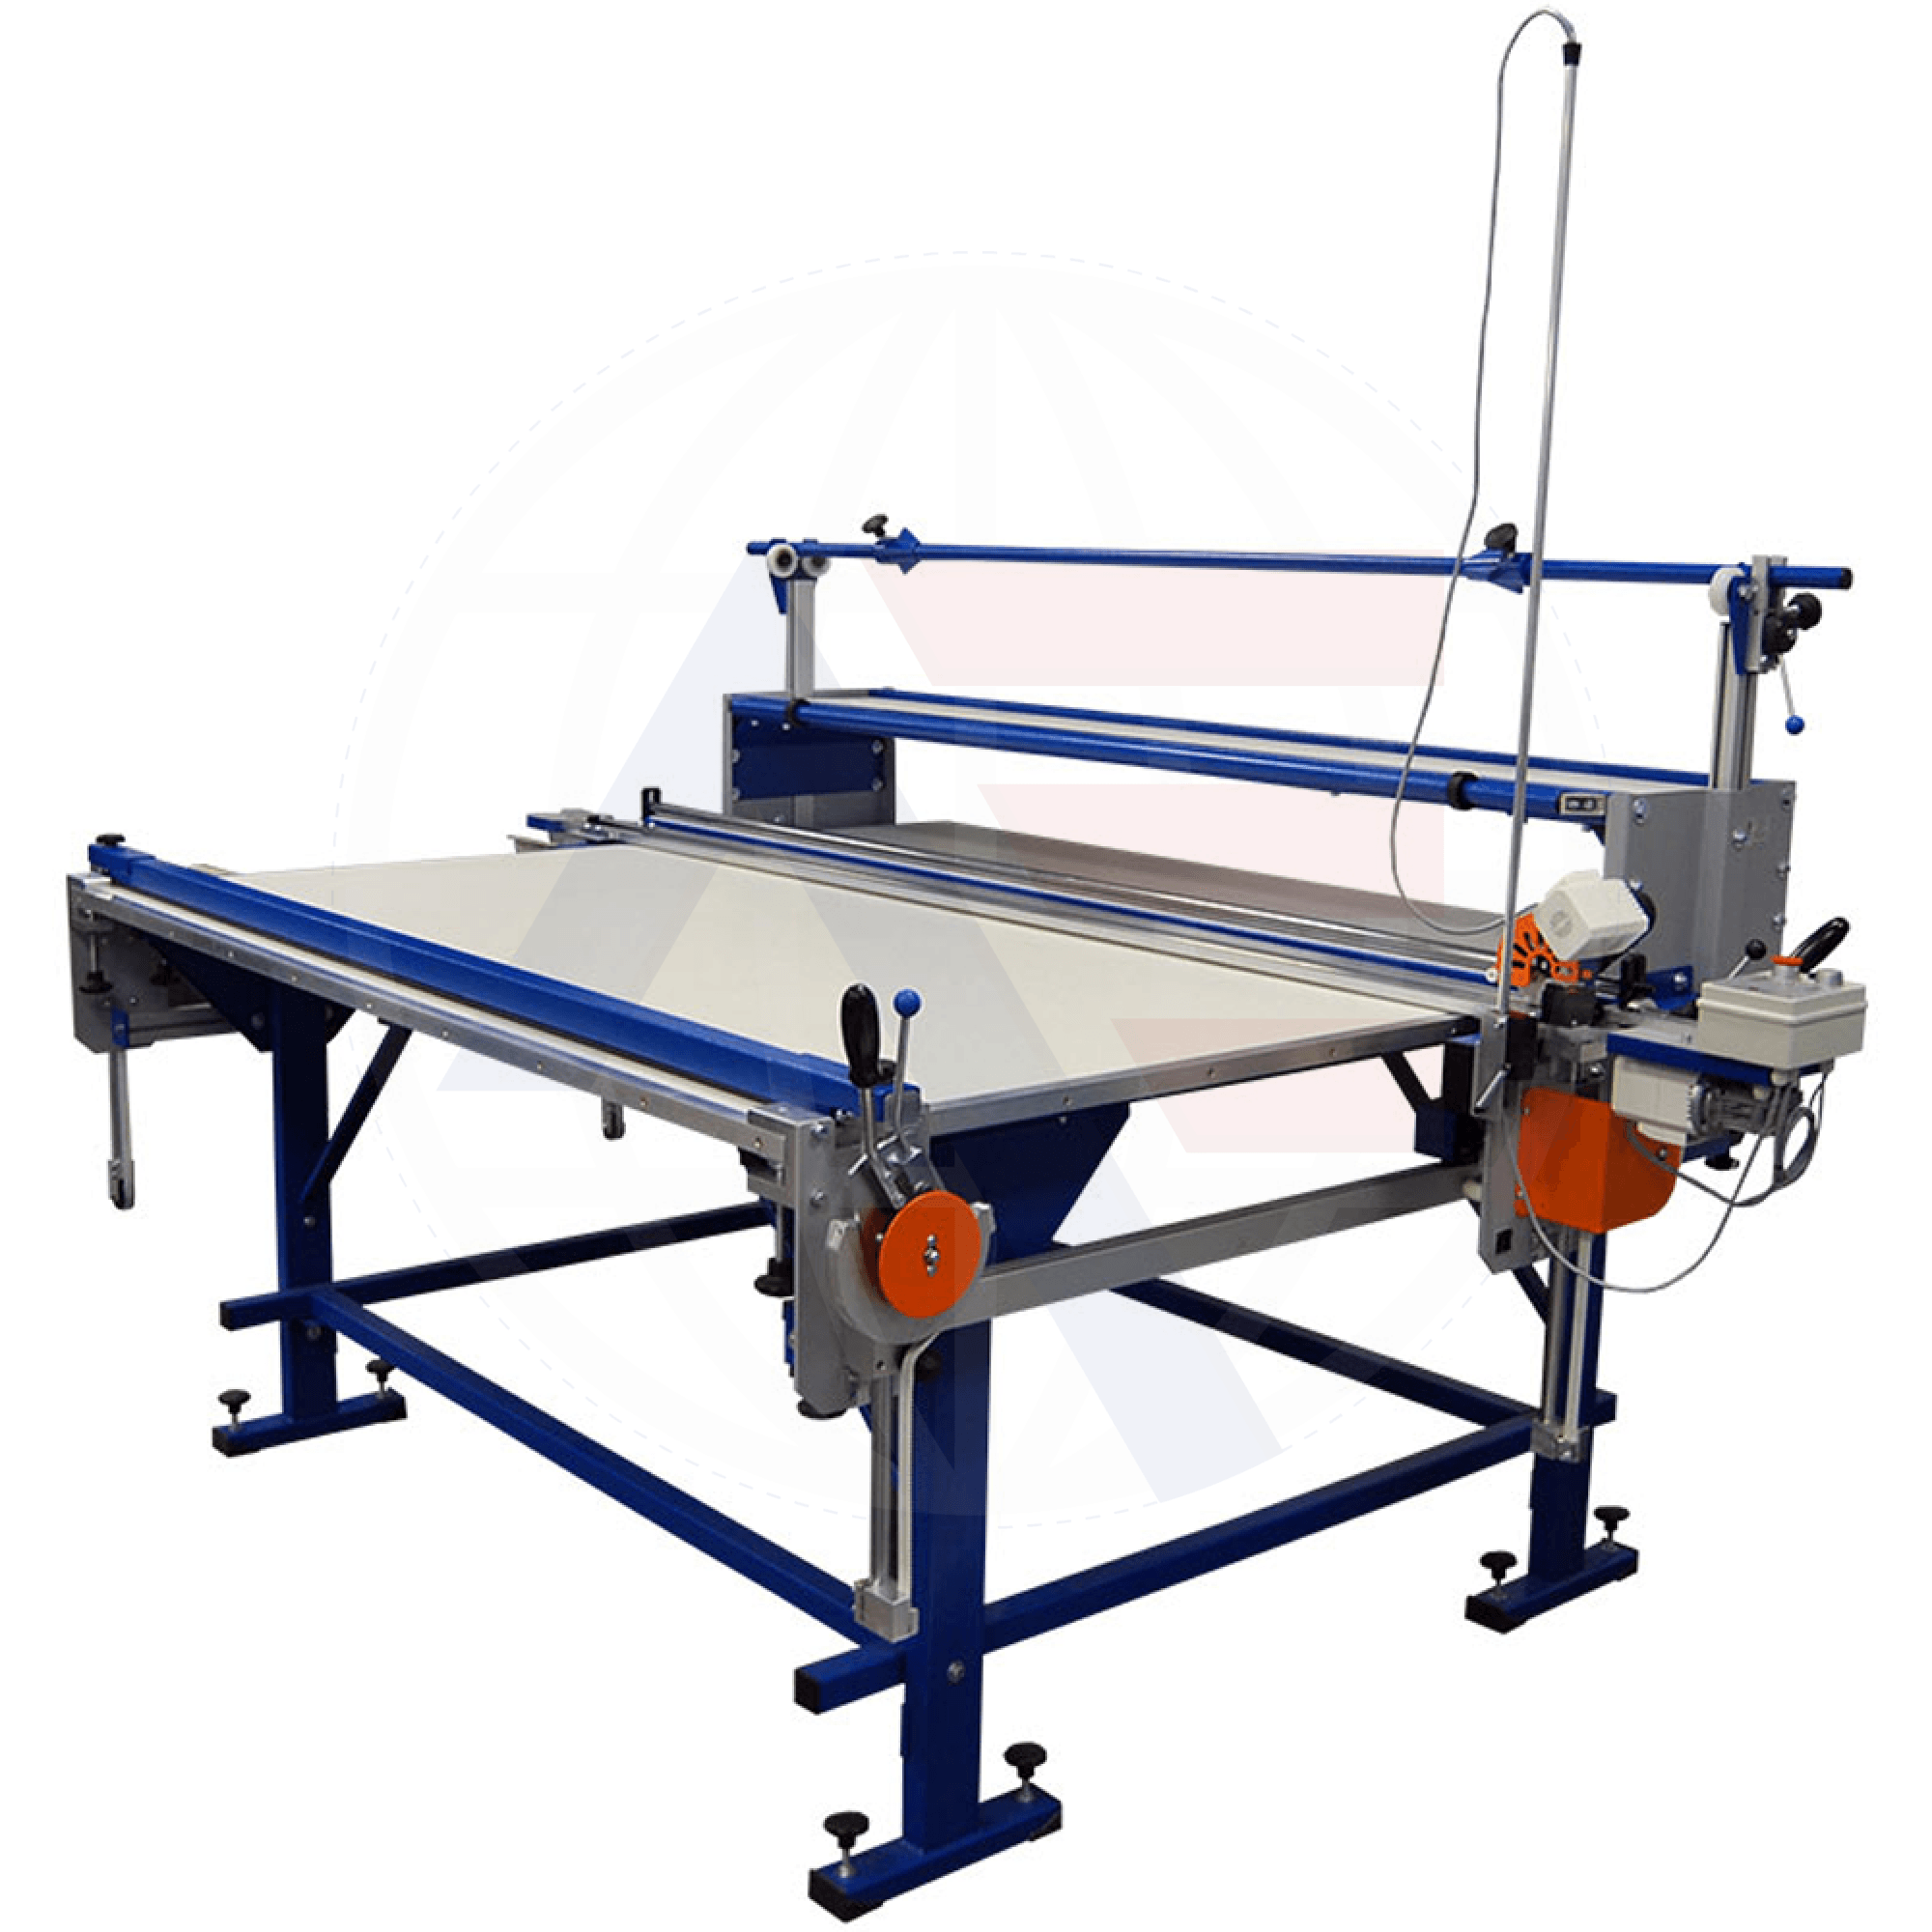 Rexel Ul-3 Manual Fabric Spreading Machine